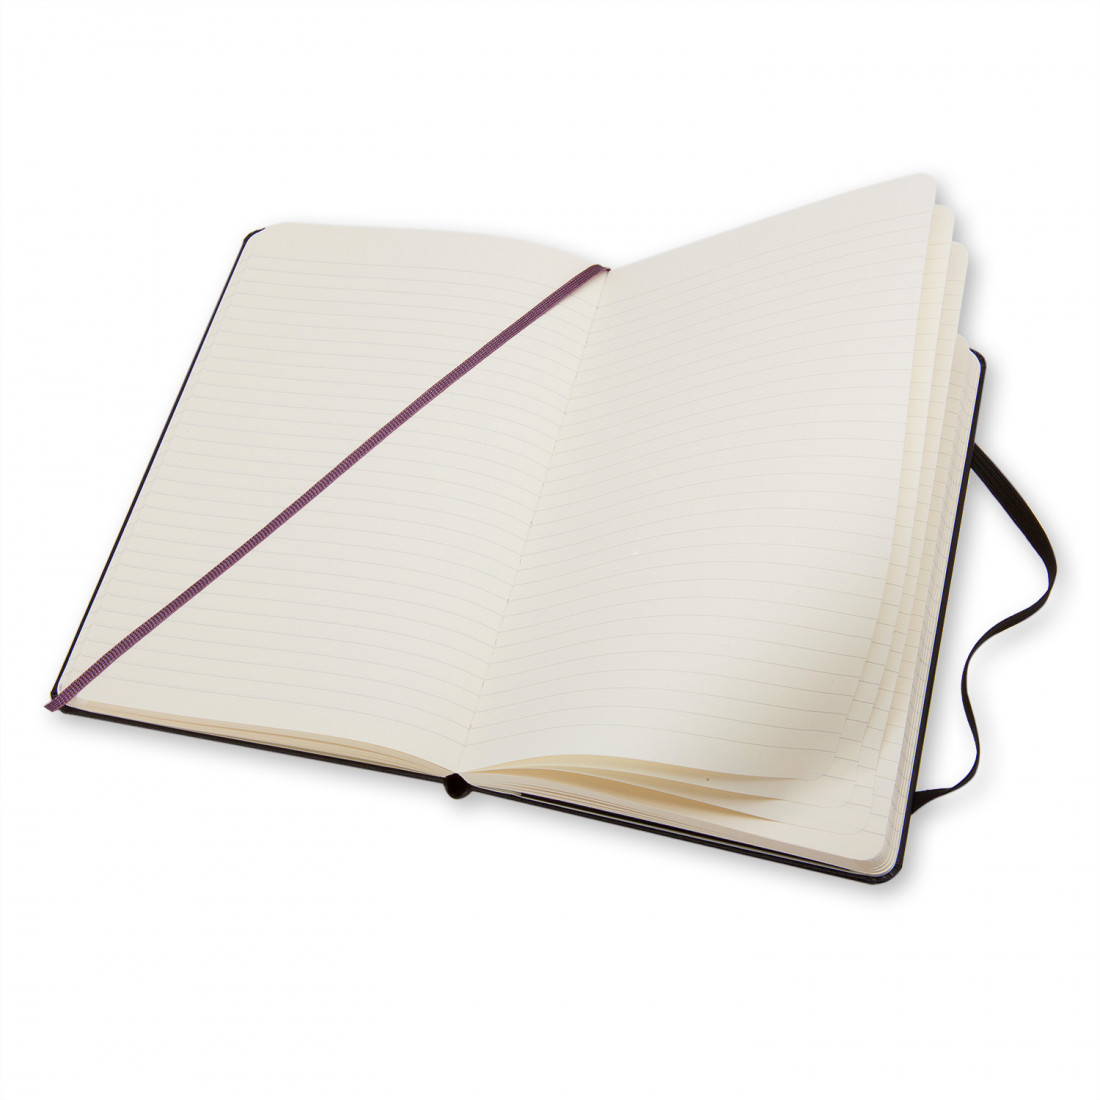 Notebook Extra Large 19x25 Ruled Black Hard Cover Moleskine